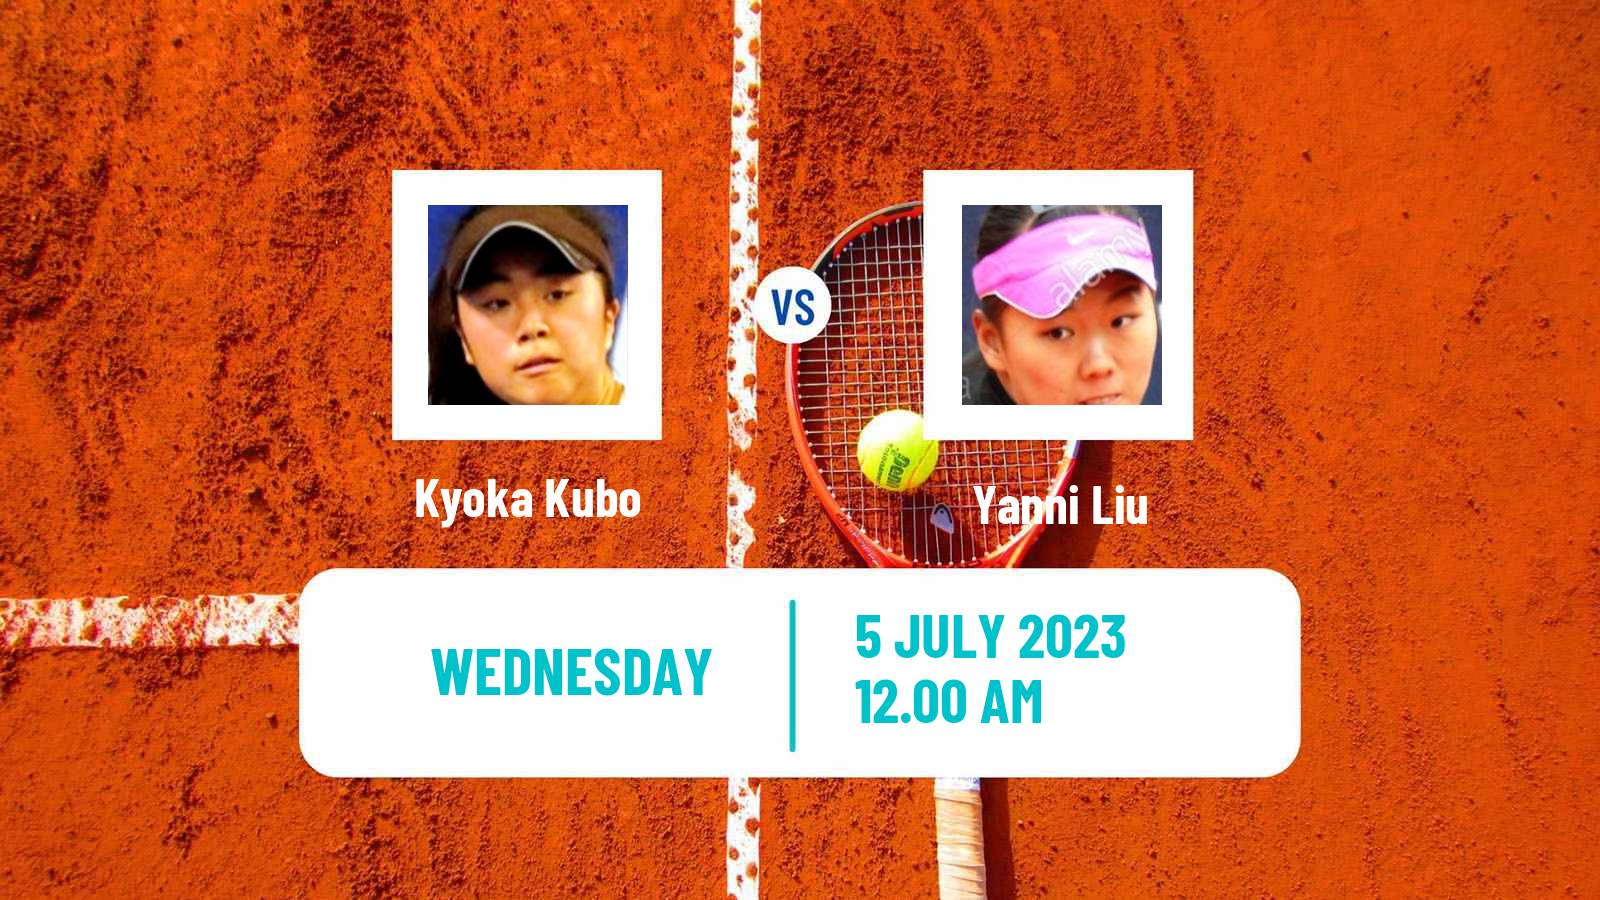 Tennis ITF W15 Tianjin 4 Women Kyoka Kubo - Yanni Liu